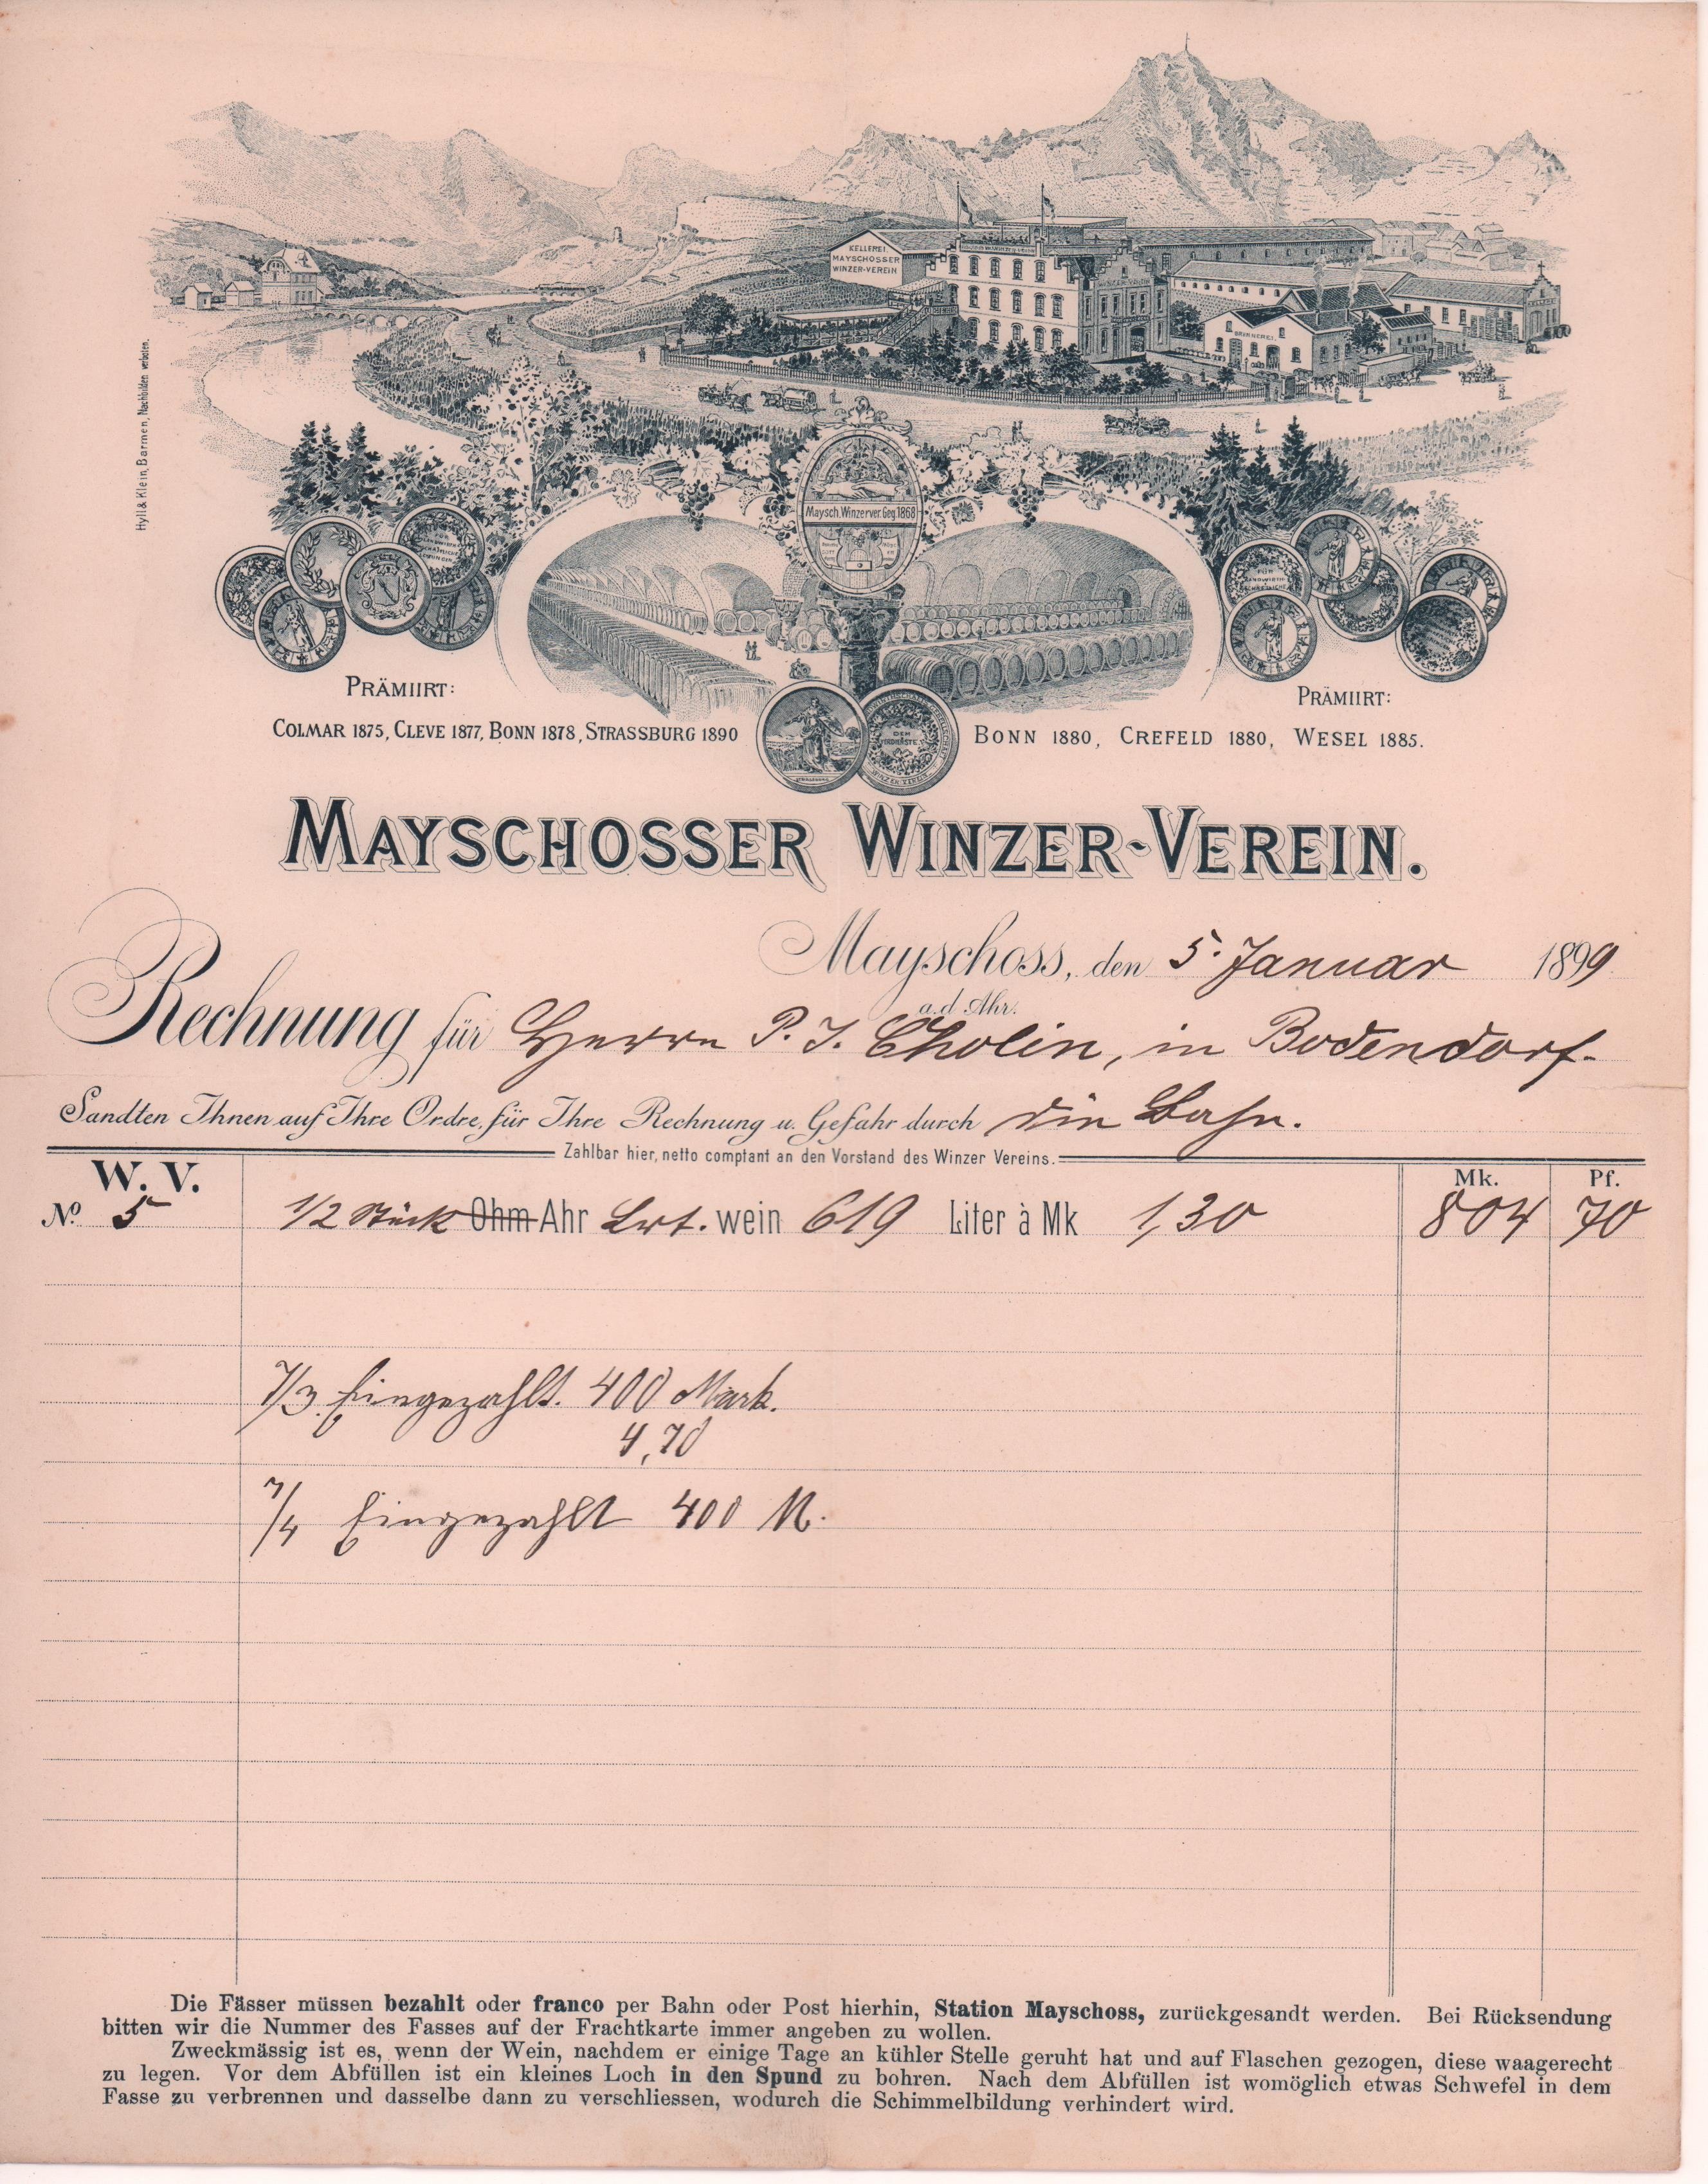 Lieferantenrechnung für Wein vomMayschosser Winzer-Verein in Mayschoss vom 05.01.1899 (Heimatarchiv Bad Bodendorf CC BY-NC-SA)